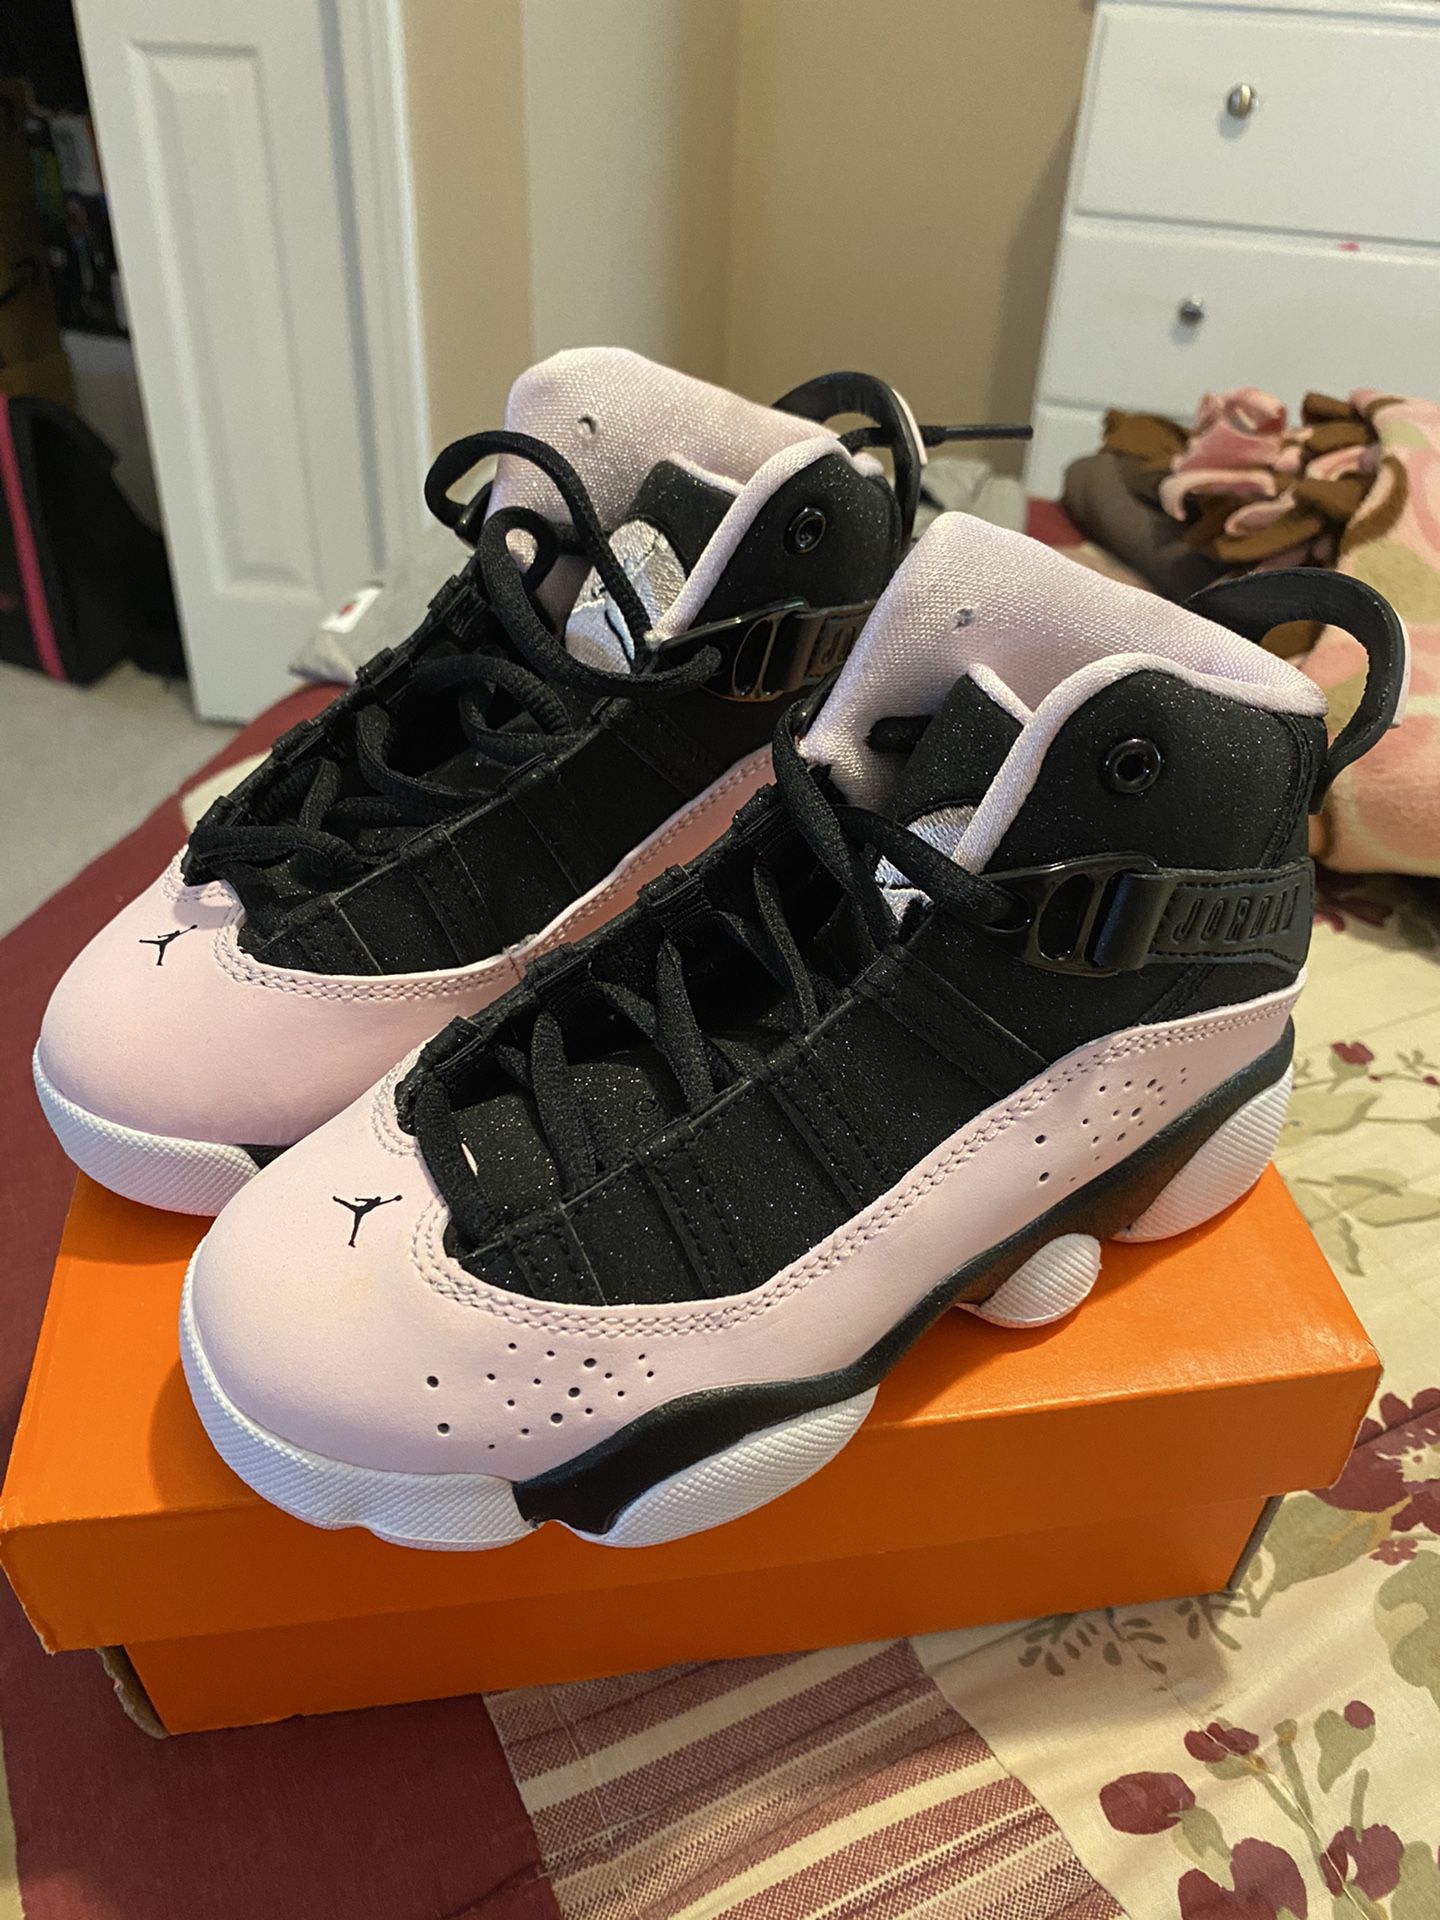 Brand New Jordan Toddler Girls Sneakers Size 11c (Black, Pink & White)!